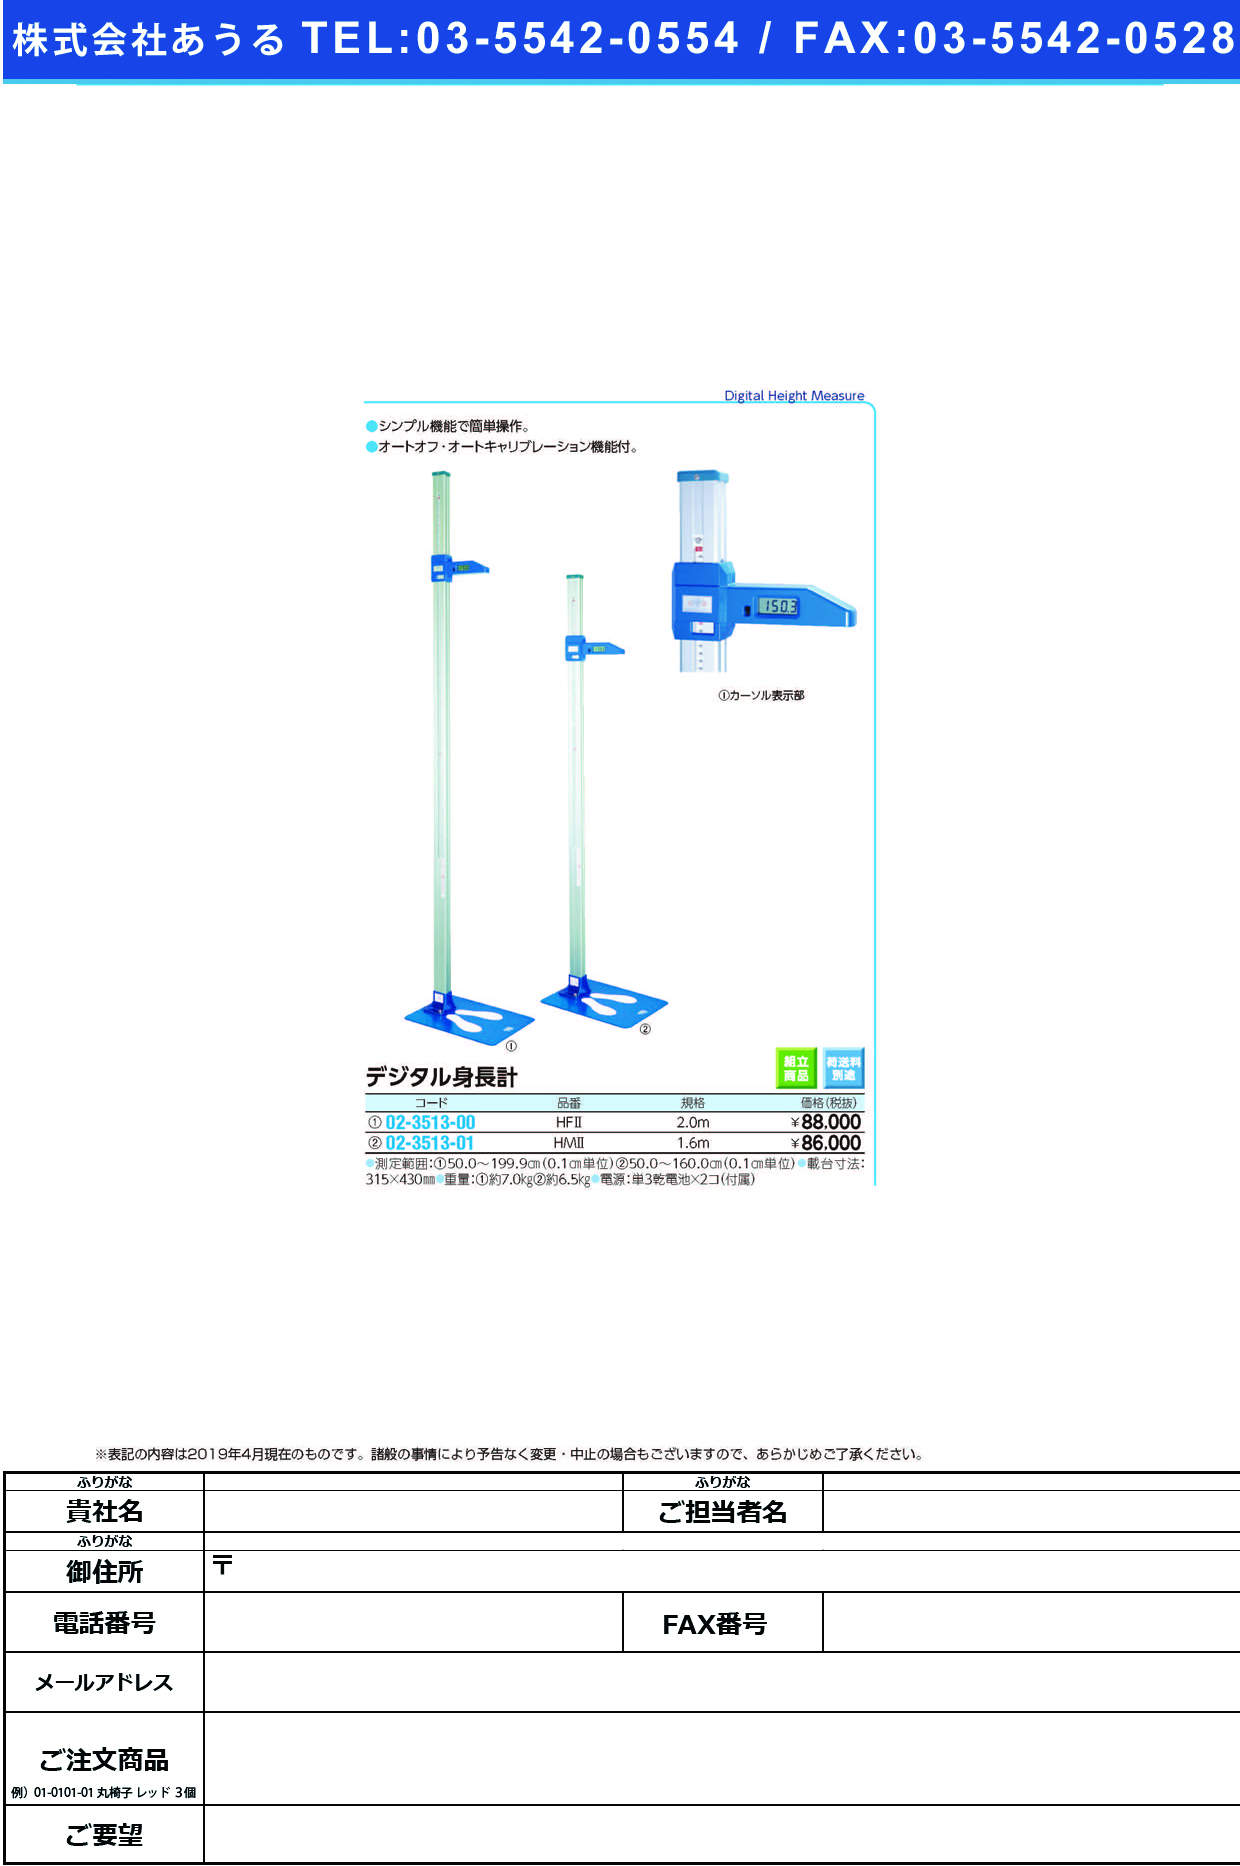 (02-3513-01)デジタル身長計 HM2(1.6M) ﾃﾞｼﾞﾀﾙｼﾝﾁｮｳｹｲ【1台単位】【2019年カタログ商品】